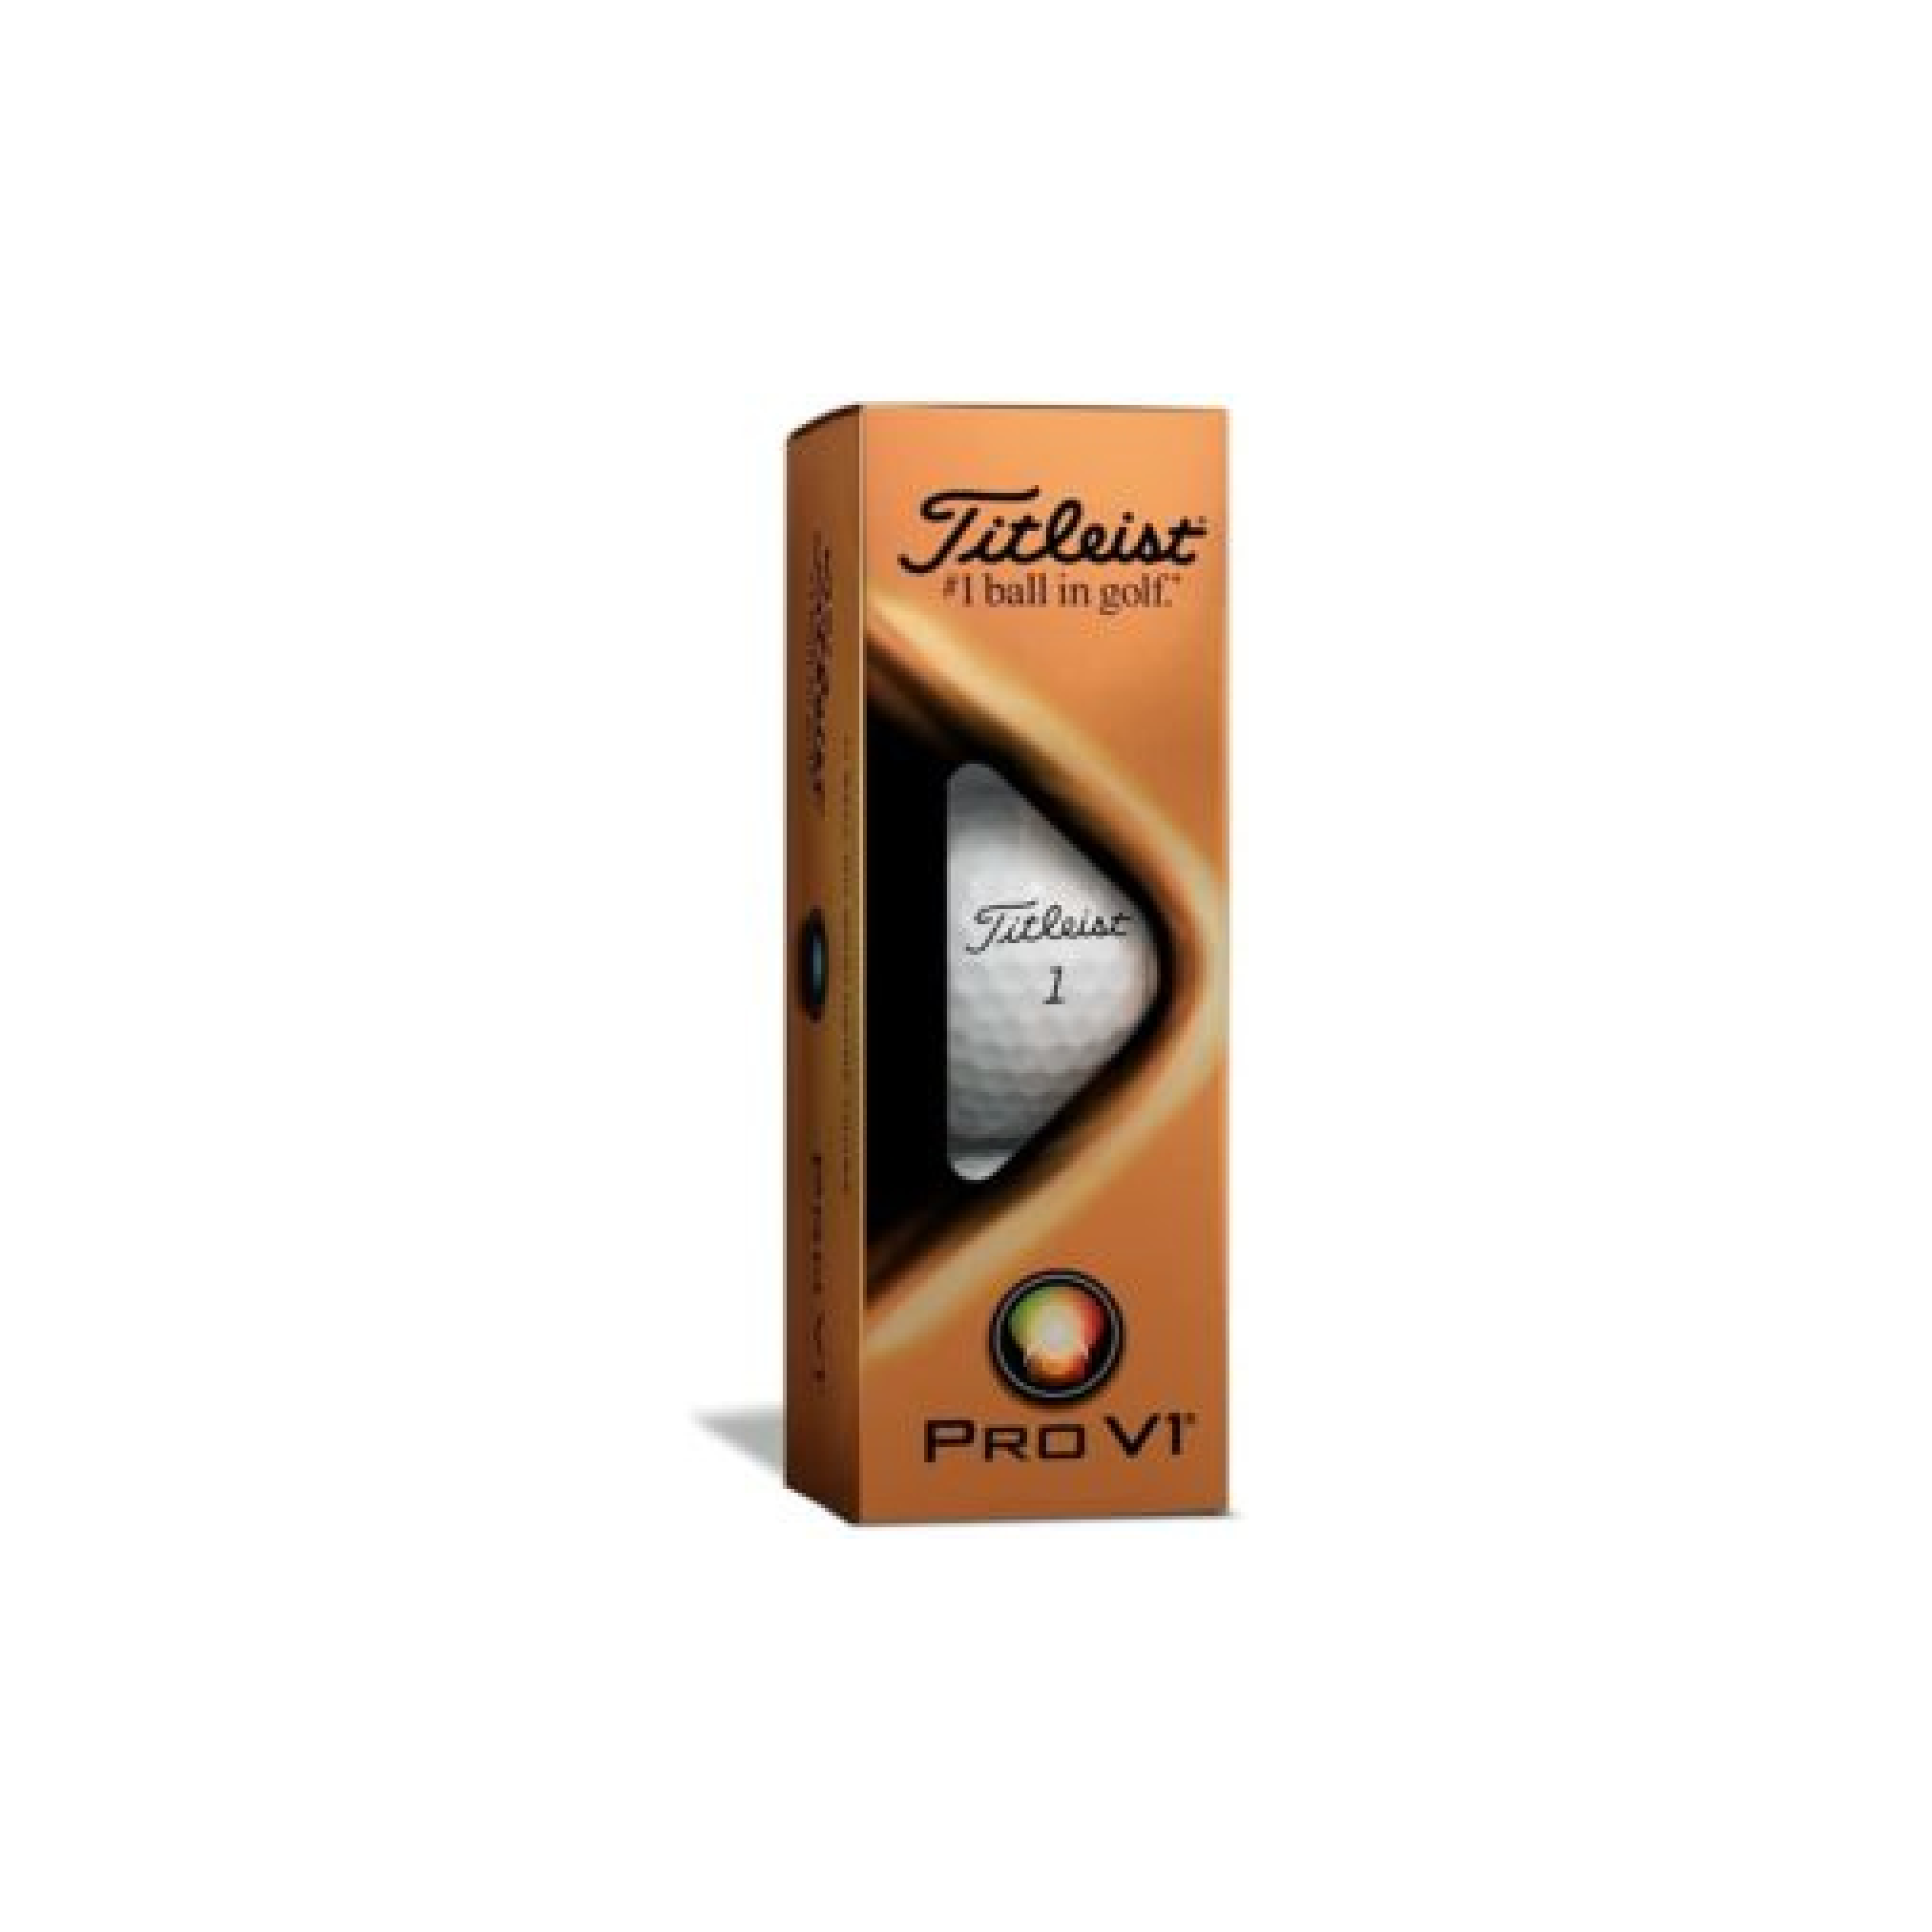 Titleist Pro V1 Golf Ball 3 Pack • Mercer Zimmerman Lighting